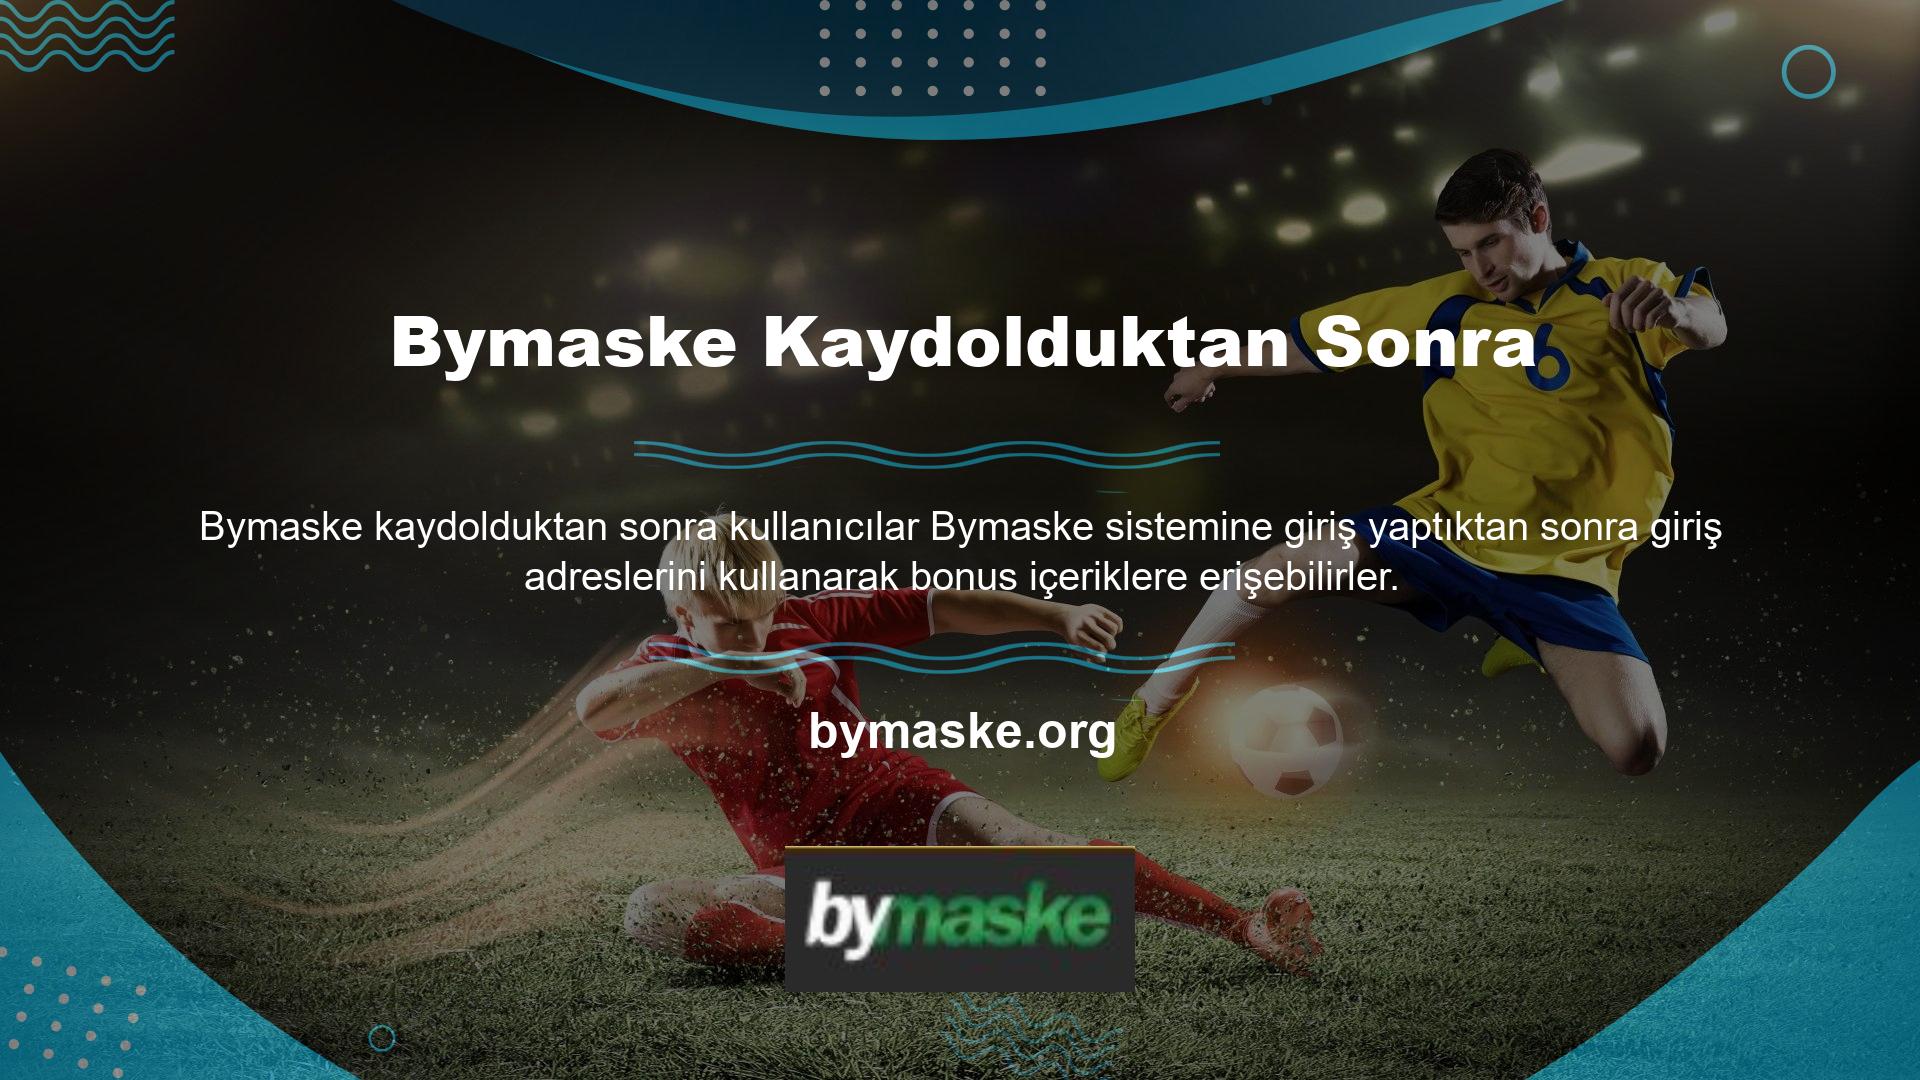 Kaydolduktan sonra Bymaske, canlı sohbet gibi ortaklık programları da sunmaktadır